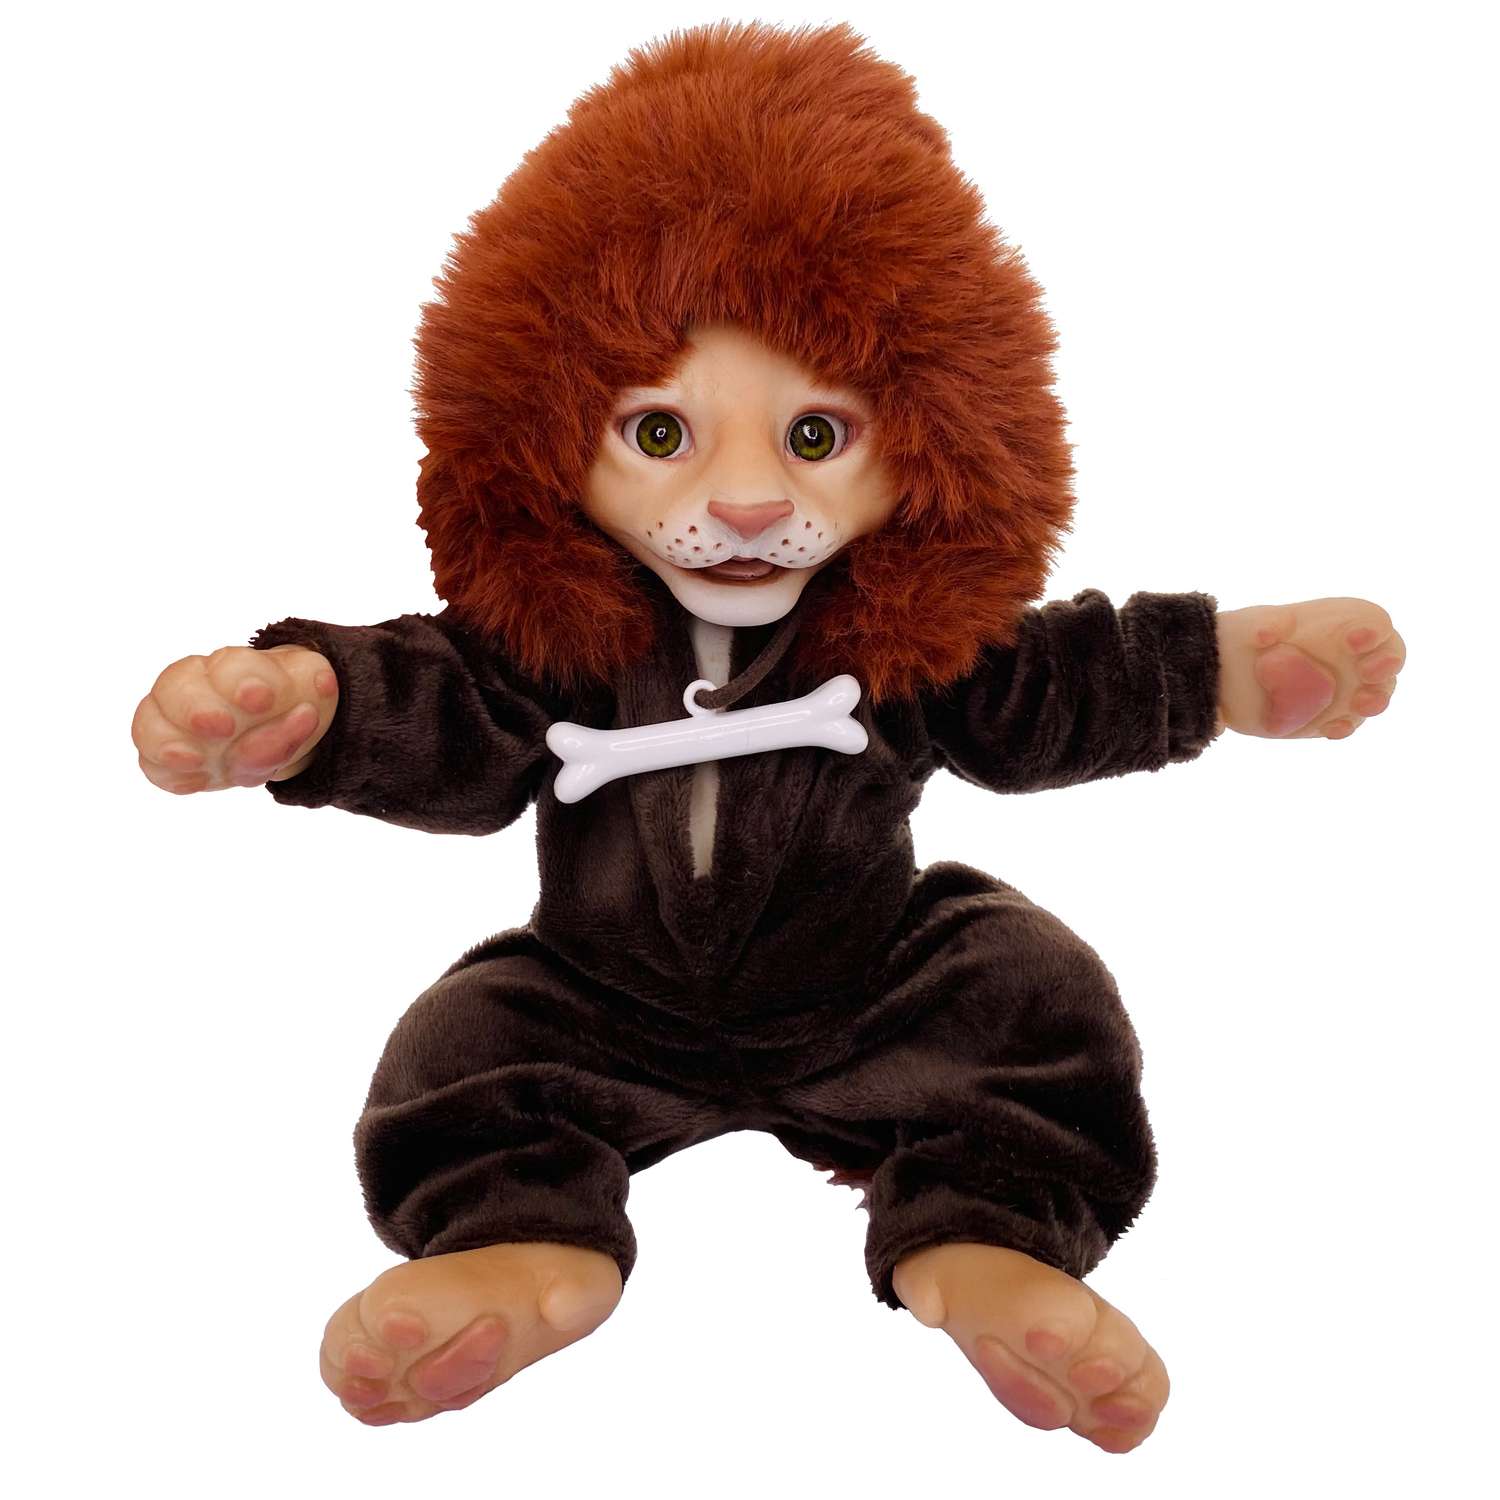 Одежда для игрушки льва Magic Manufactory Комбинезон Сочные джунгли А02 С02 0013 А02 С02 0013 - фото 2